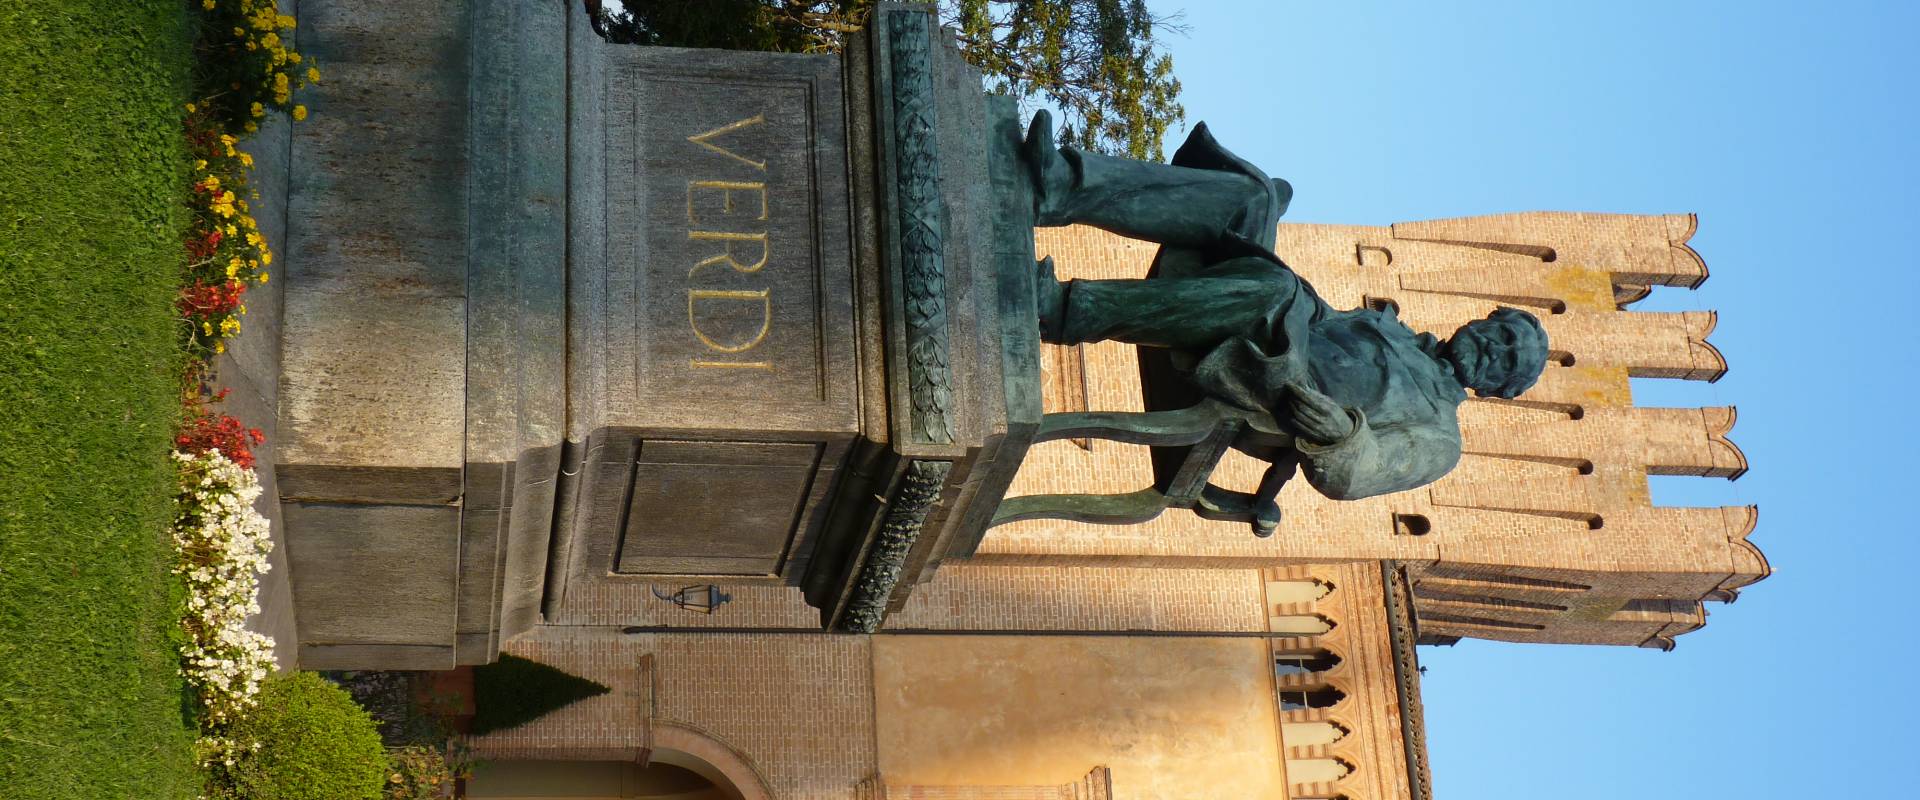 Monumento Giuseppe Verdi (con basamento) - Busseto foto di IL MORUZ